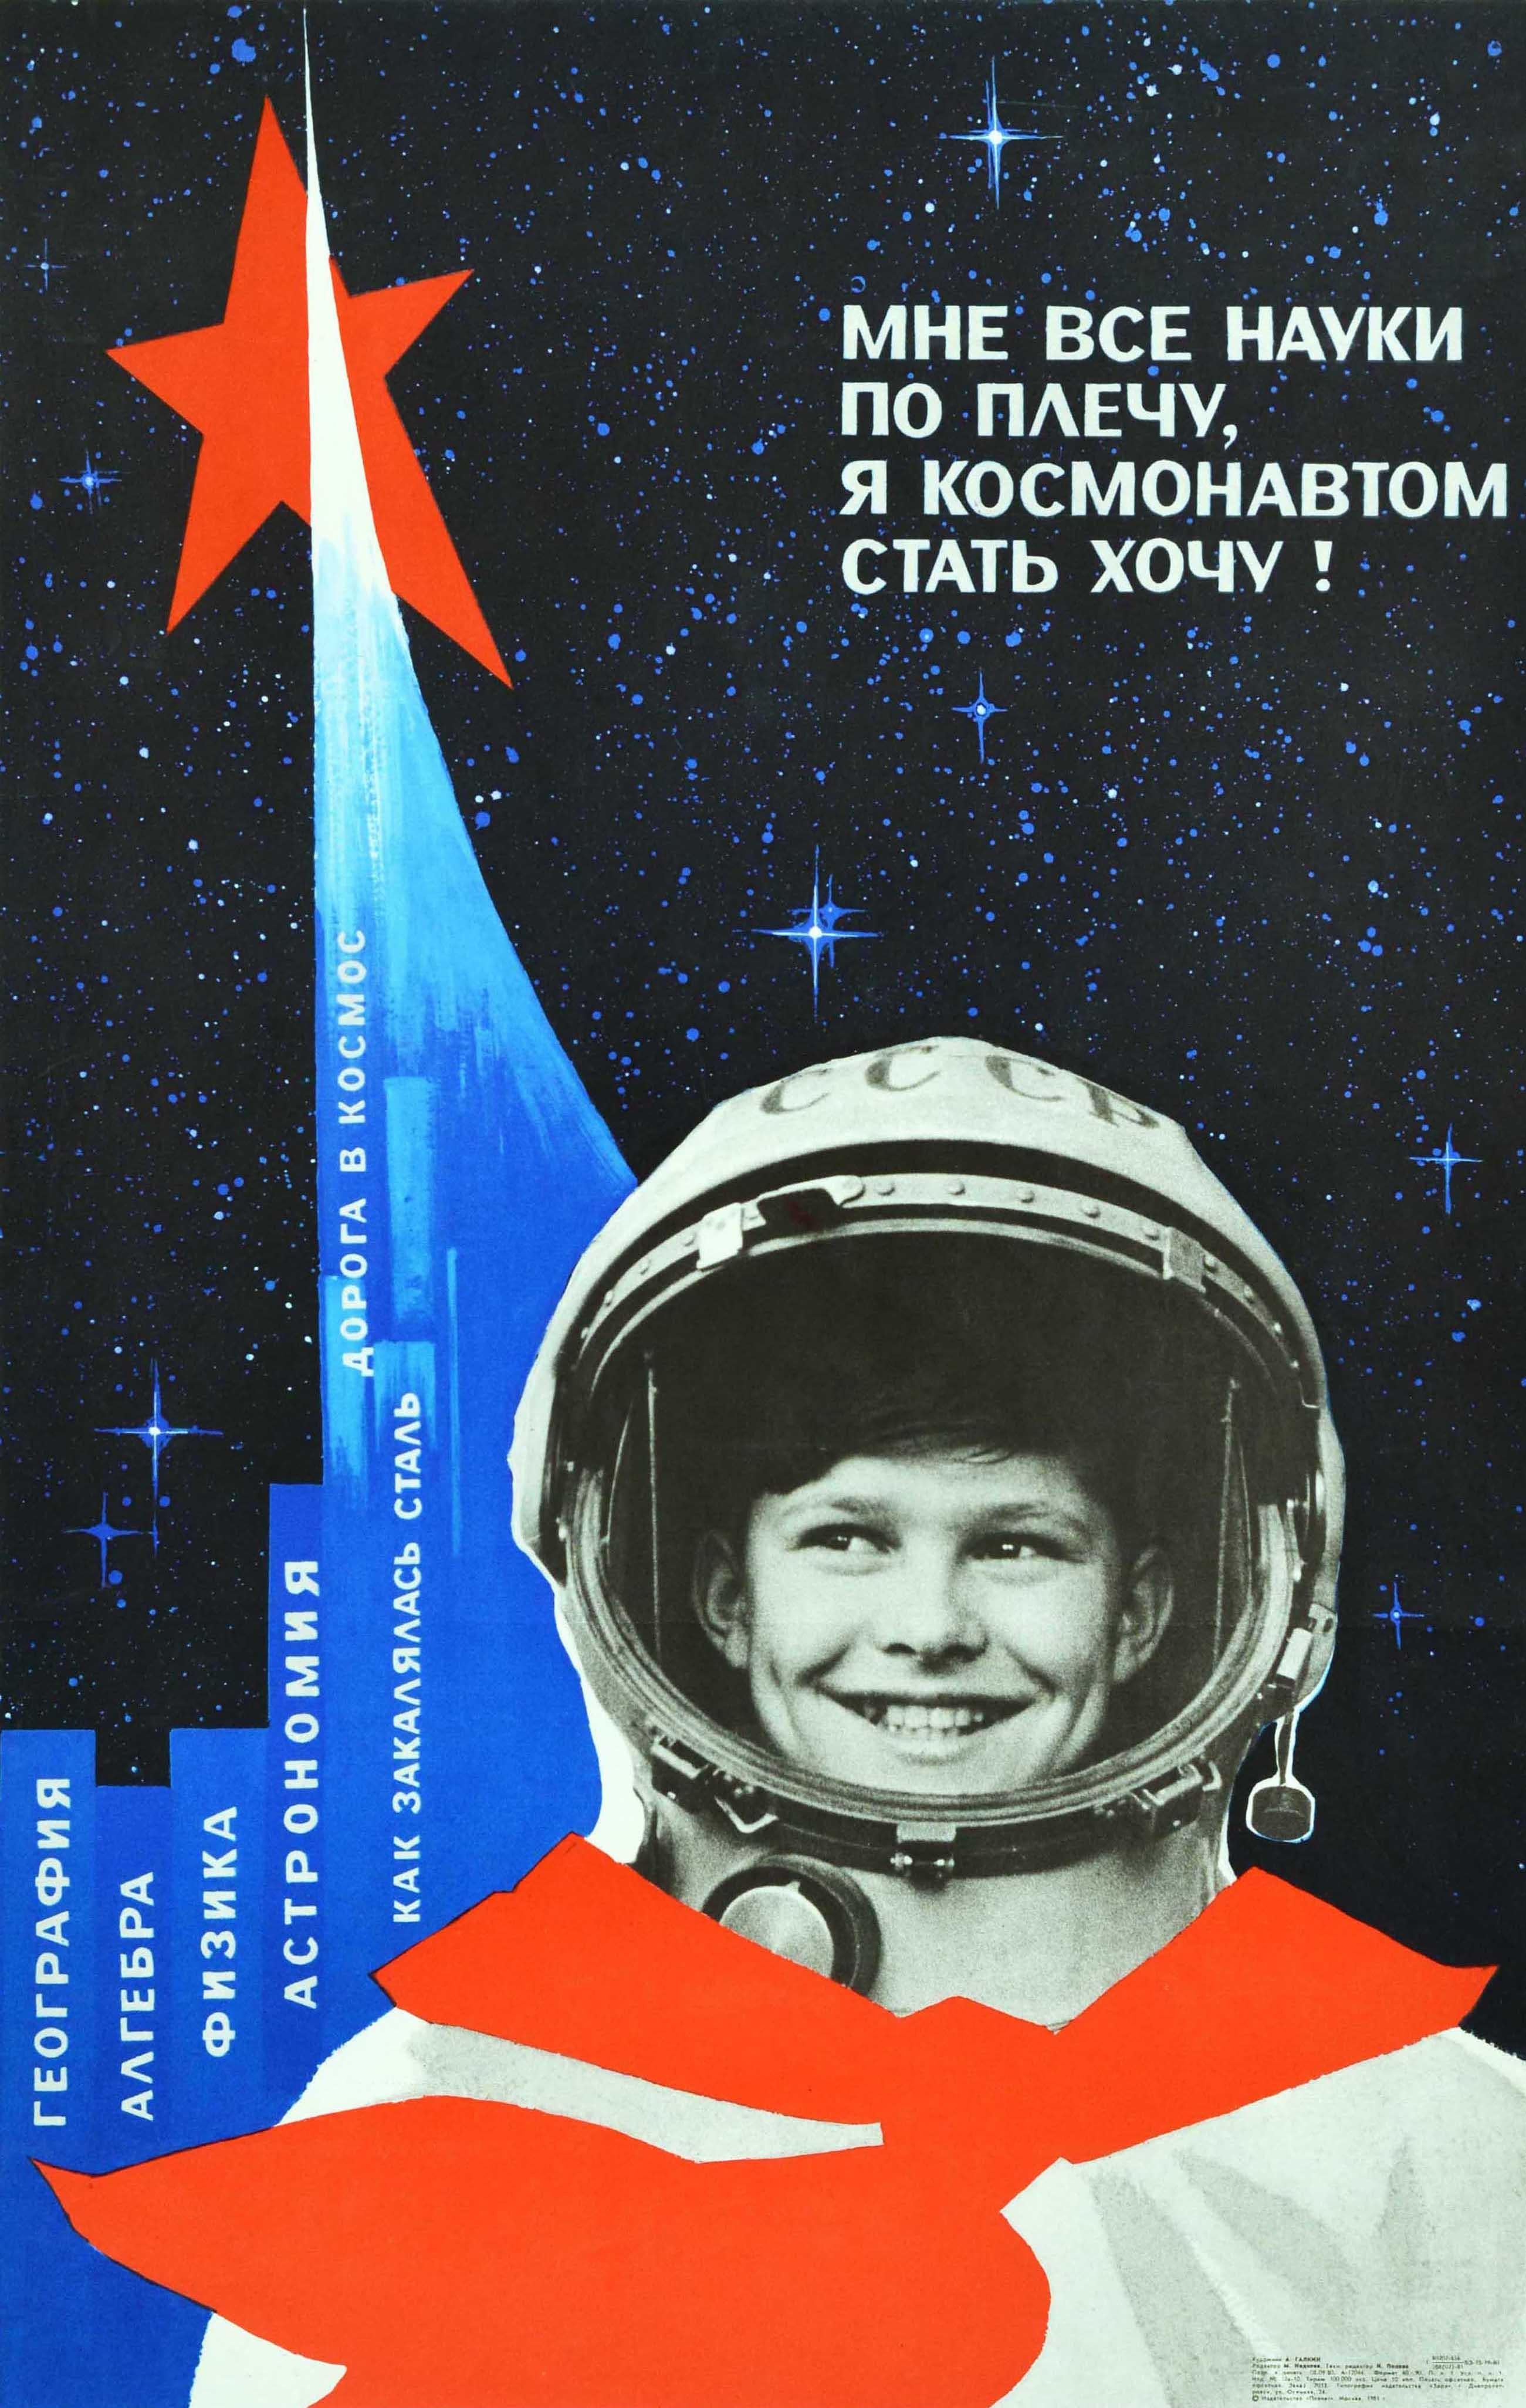 Print Galkin - Affiche rétro originale de l'école soviétique, garçon cosmonaute, éducation scientifique, URSS